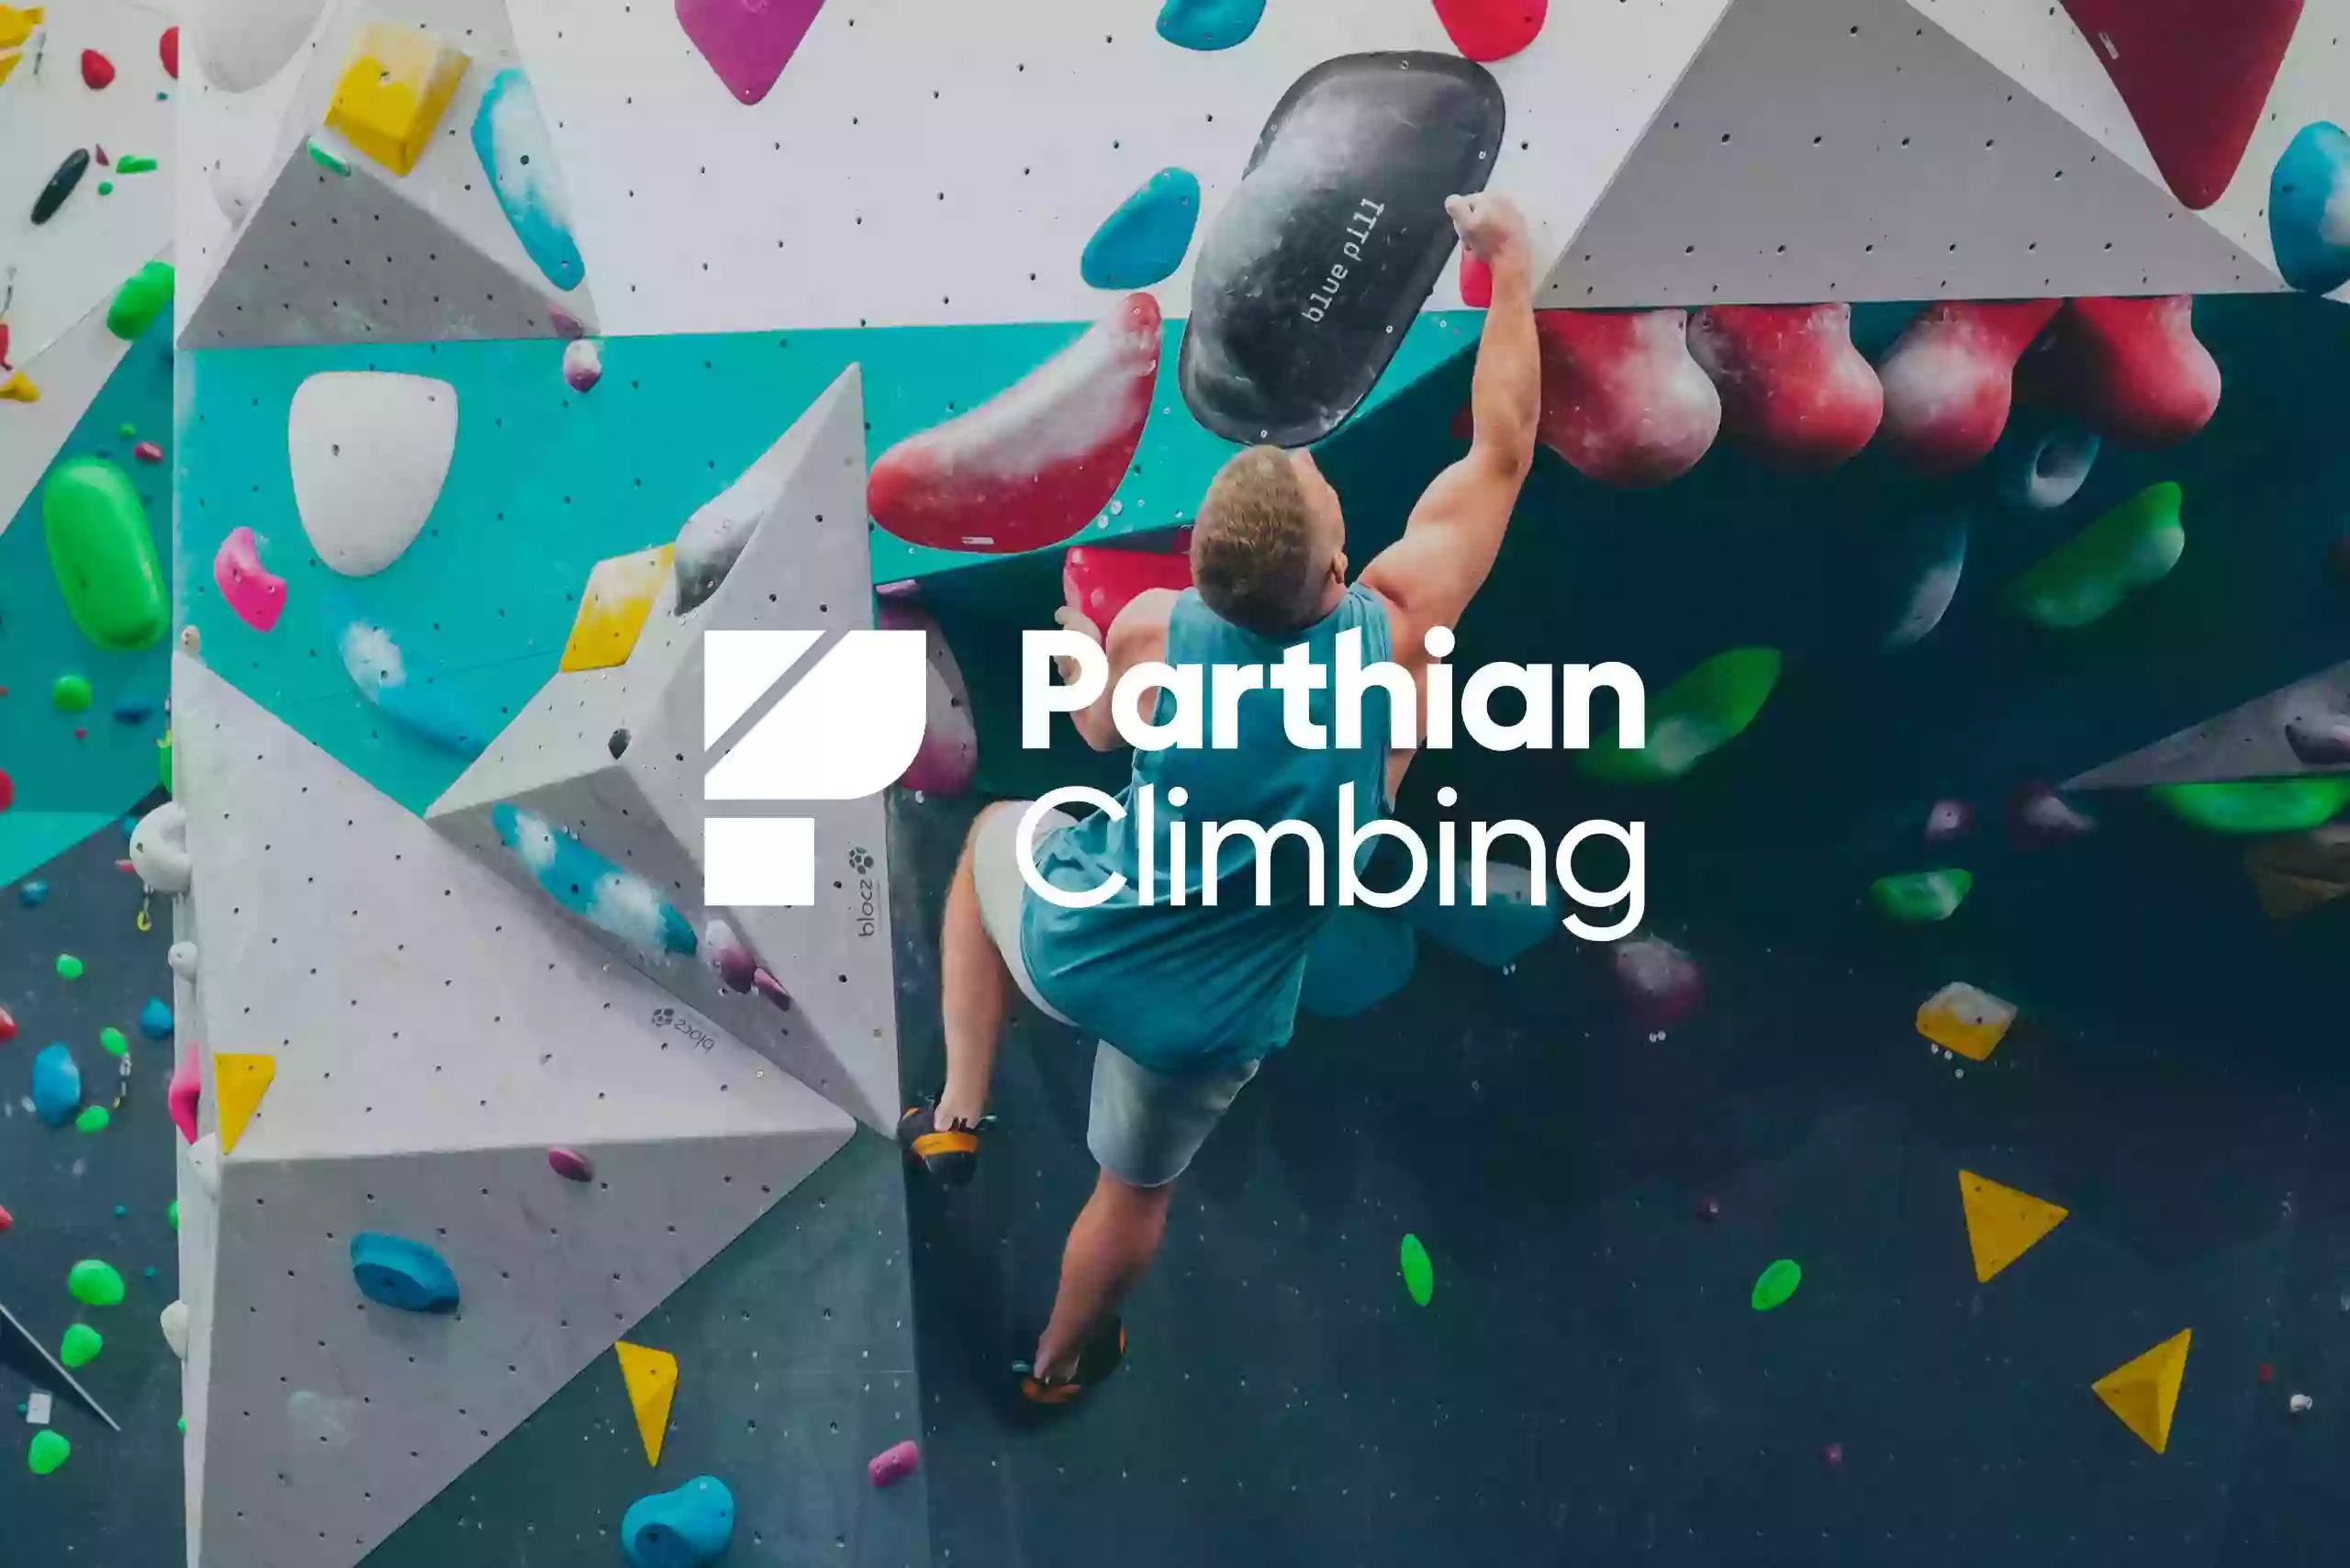 Parthian Climbing